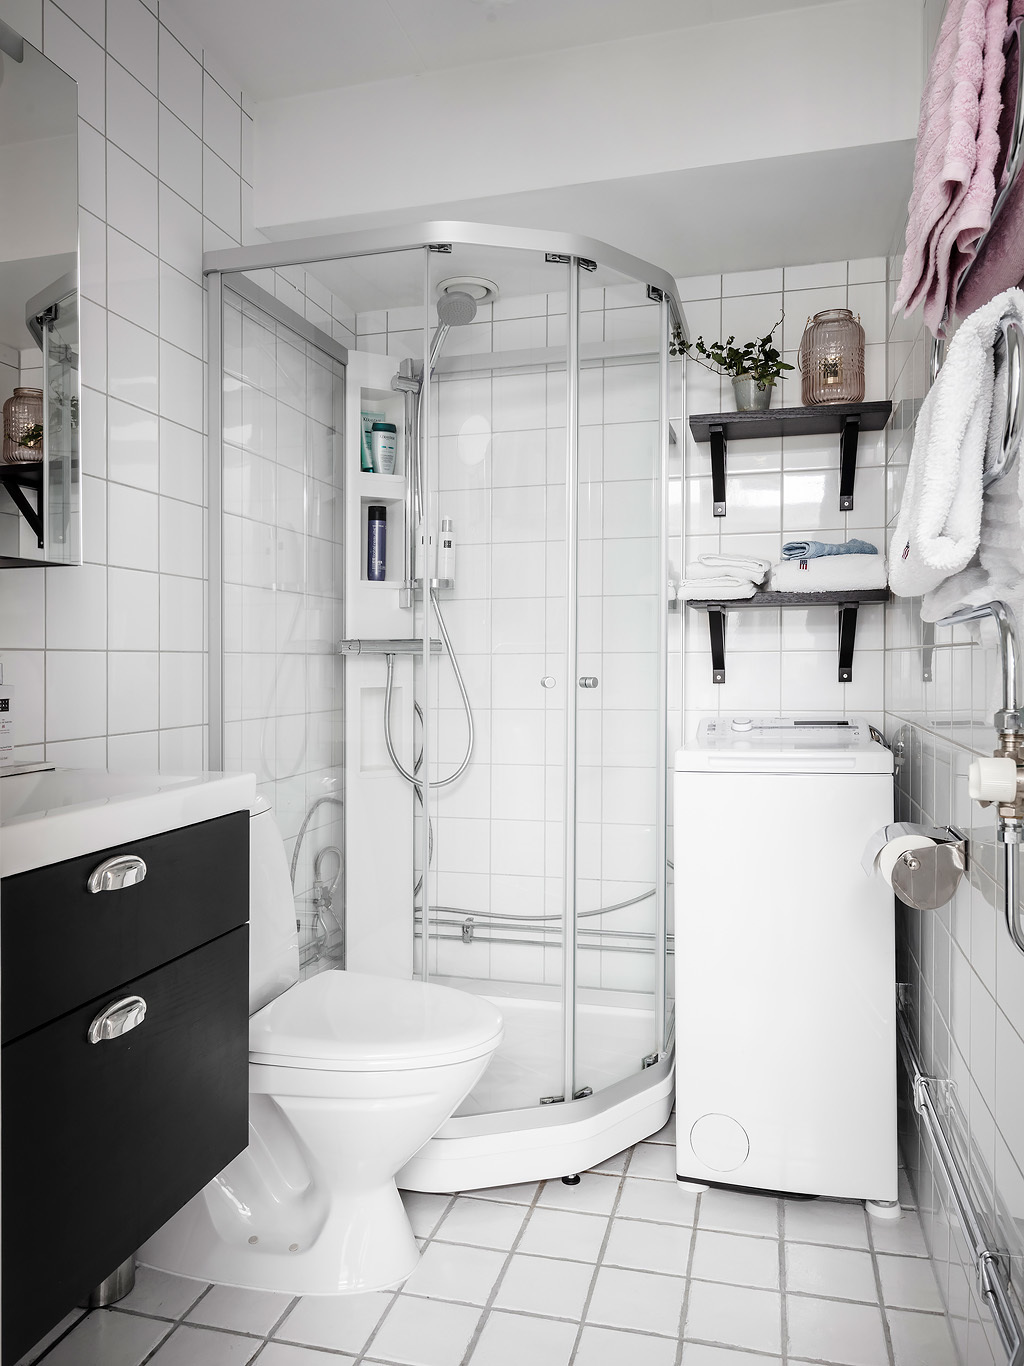 Phòng tắm và nhà vệ sinh tuy nhỏ nhưng đầy đủ tiện nghi, từ tủ vanity cho đến máy giặt, kệ mở và buồng tắm đứng phân vùng bằng cửa trượt trong suốt.